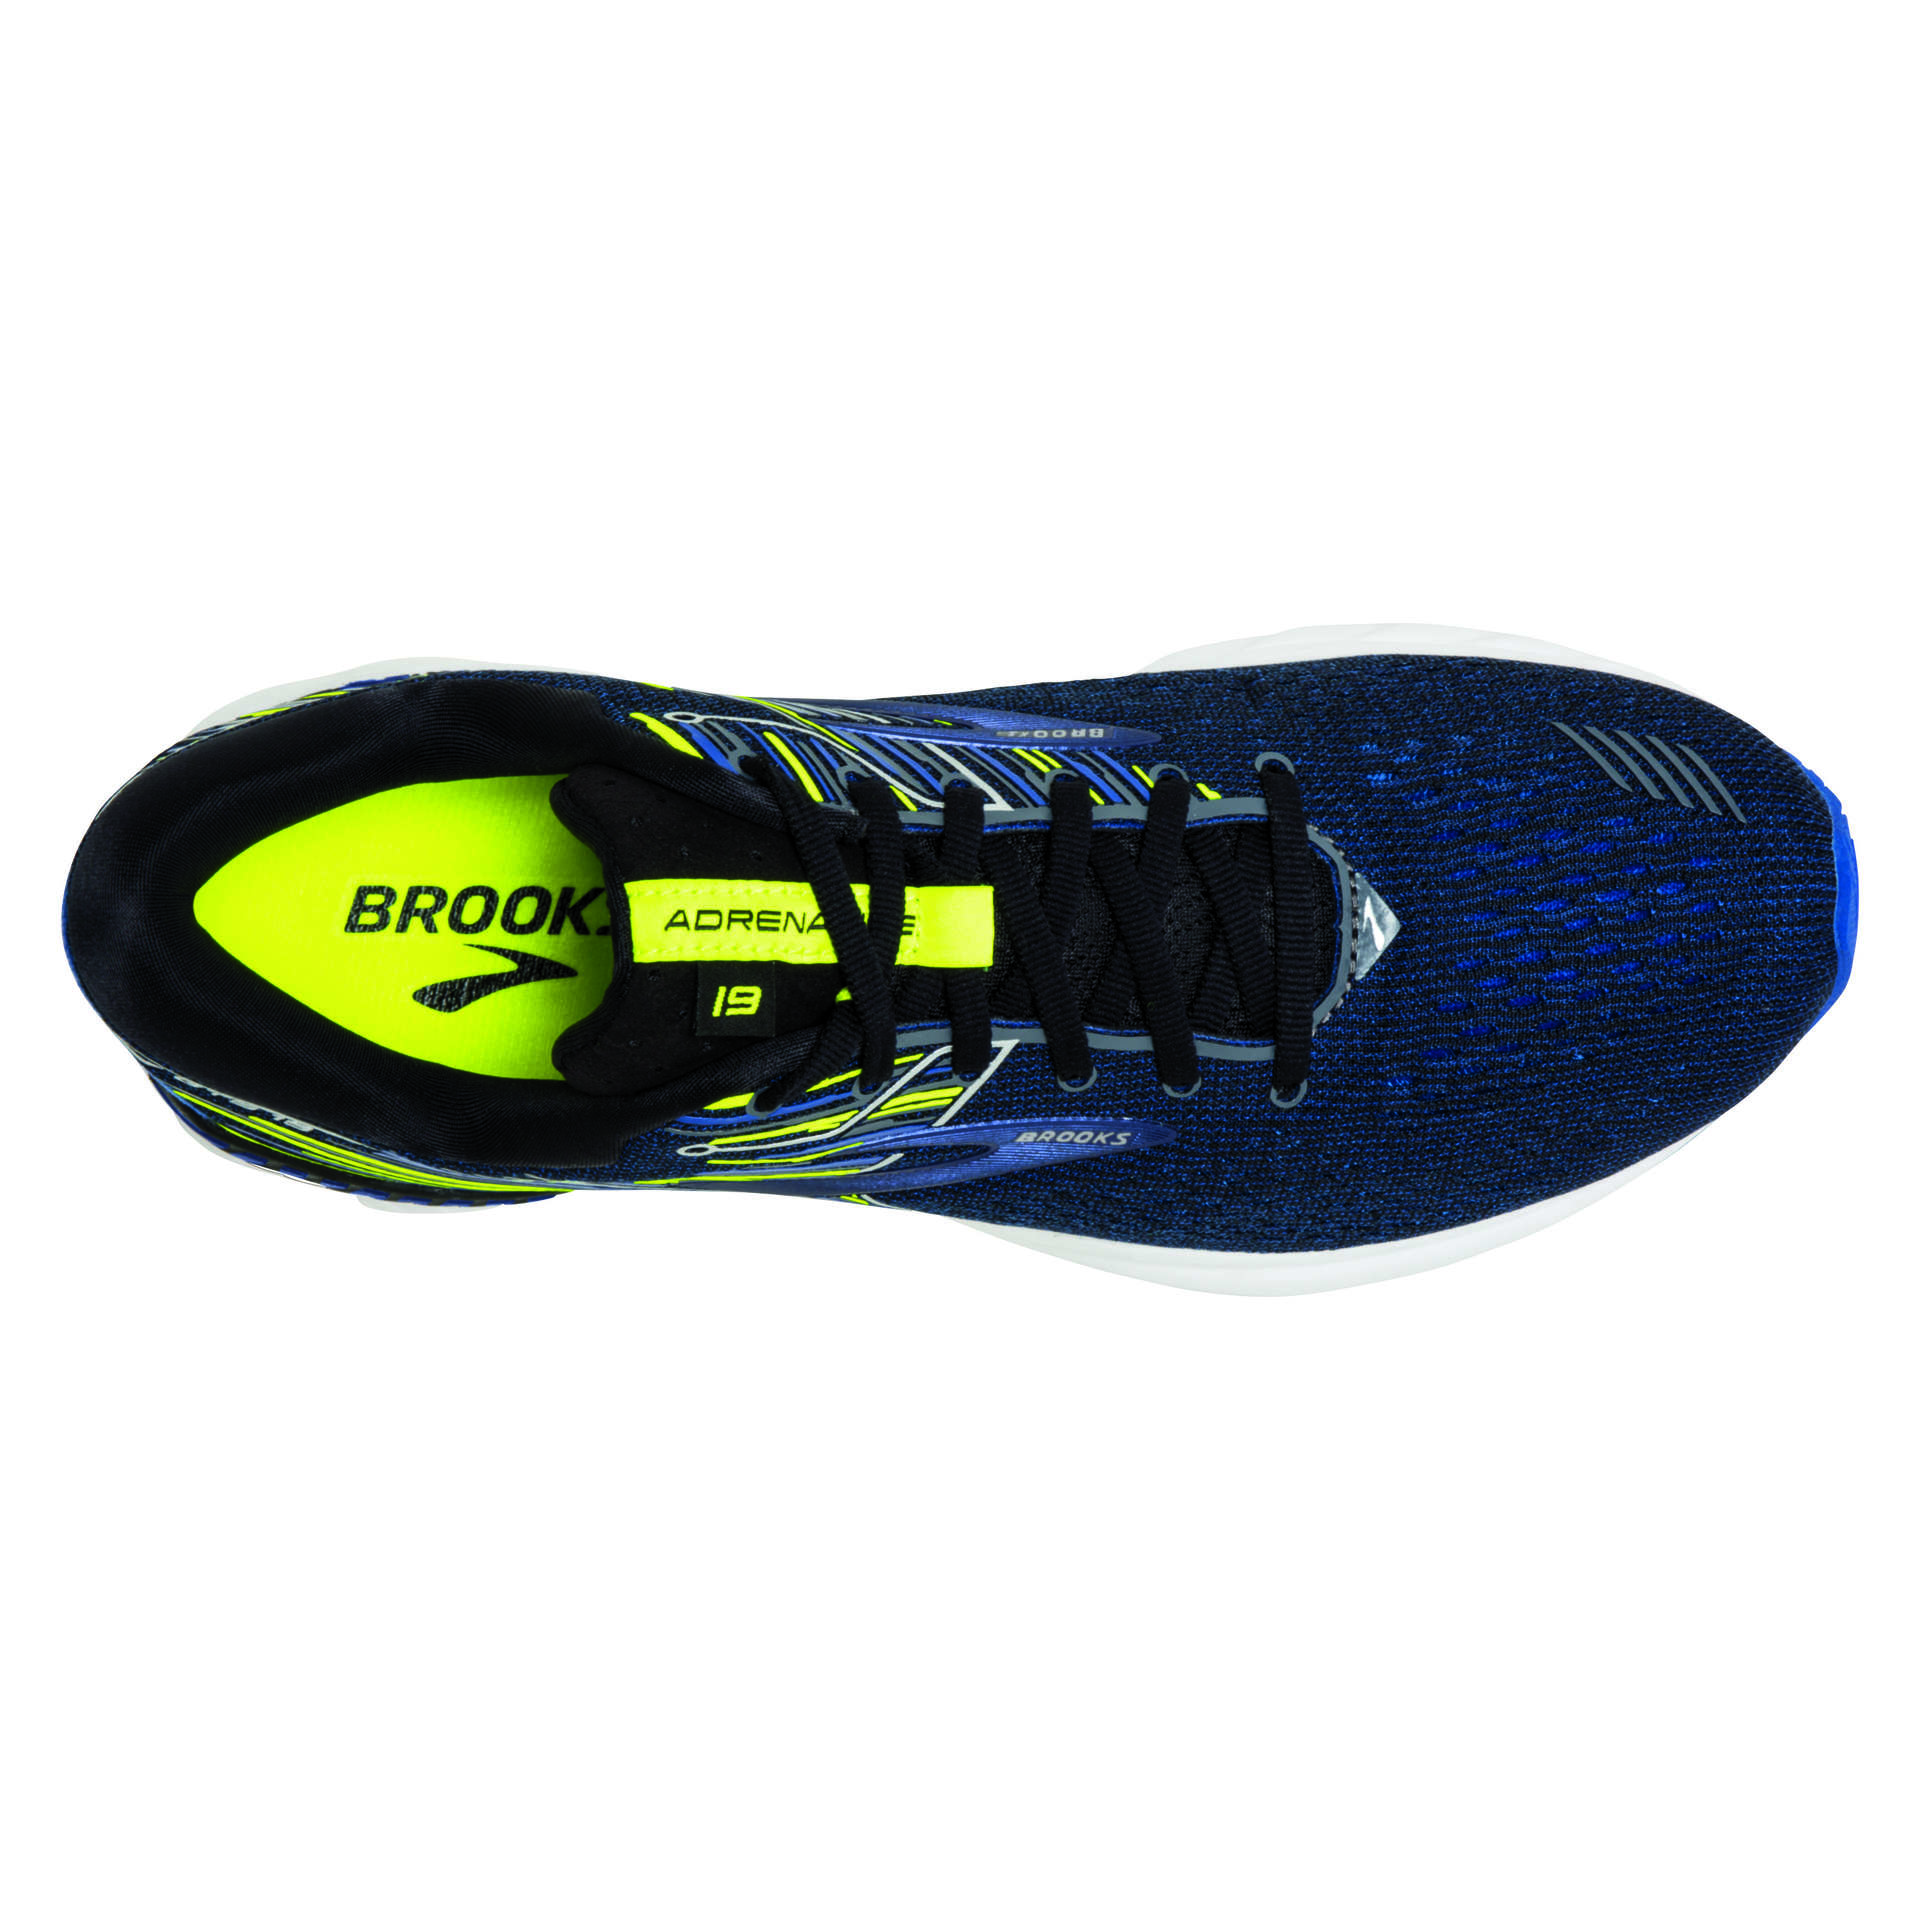 Brooks Adrenaline GTS 19 Hardloopschoenen Donkerblauw/Blauw/Geel Heren